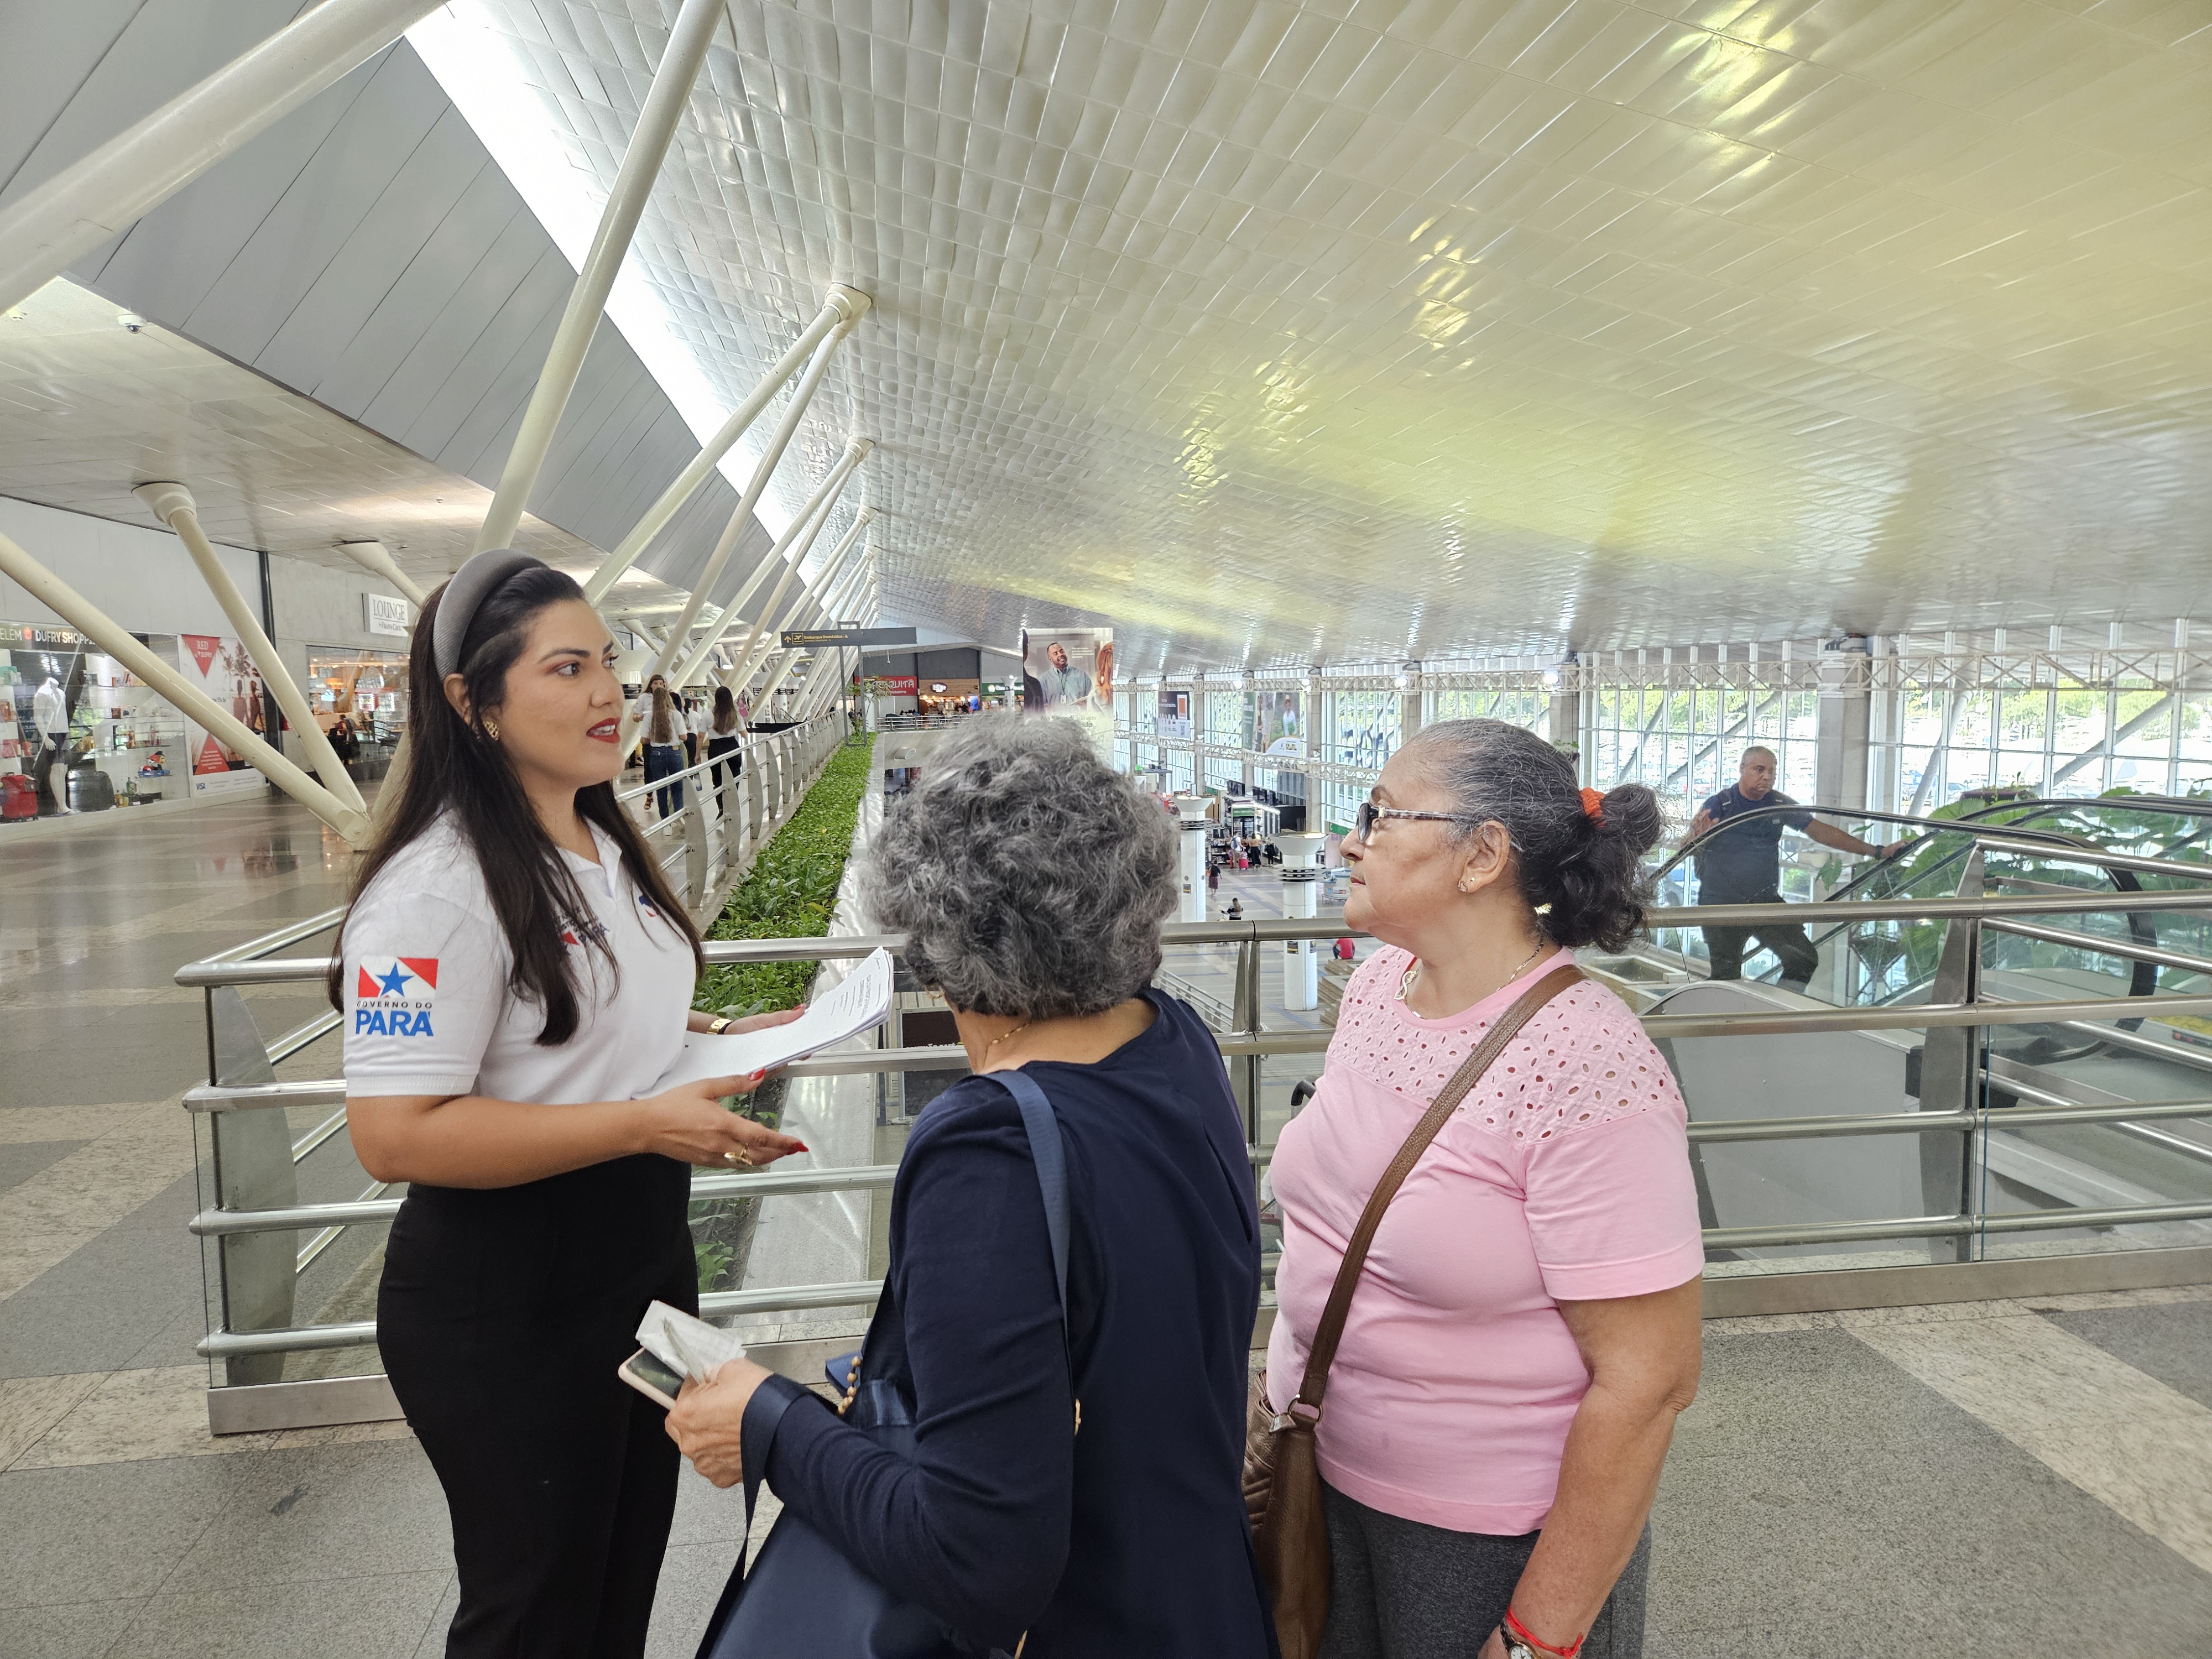 Procon Pará explica sobre pesquisa a passageiros no aeroporto